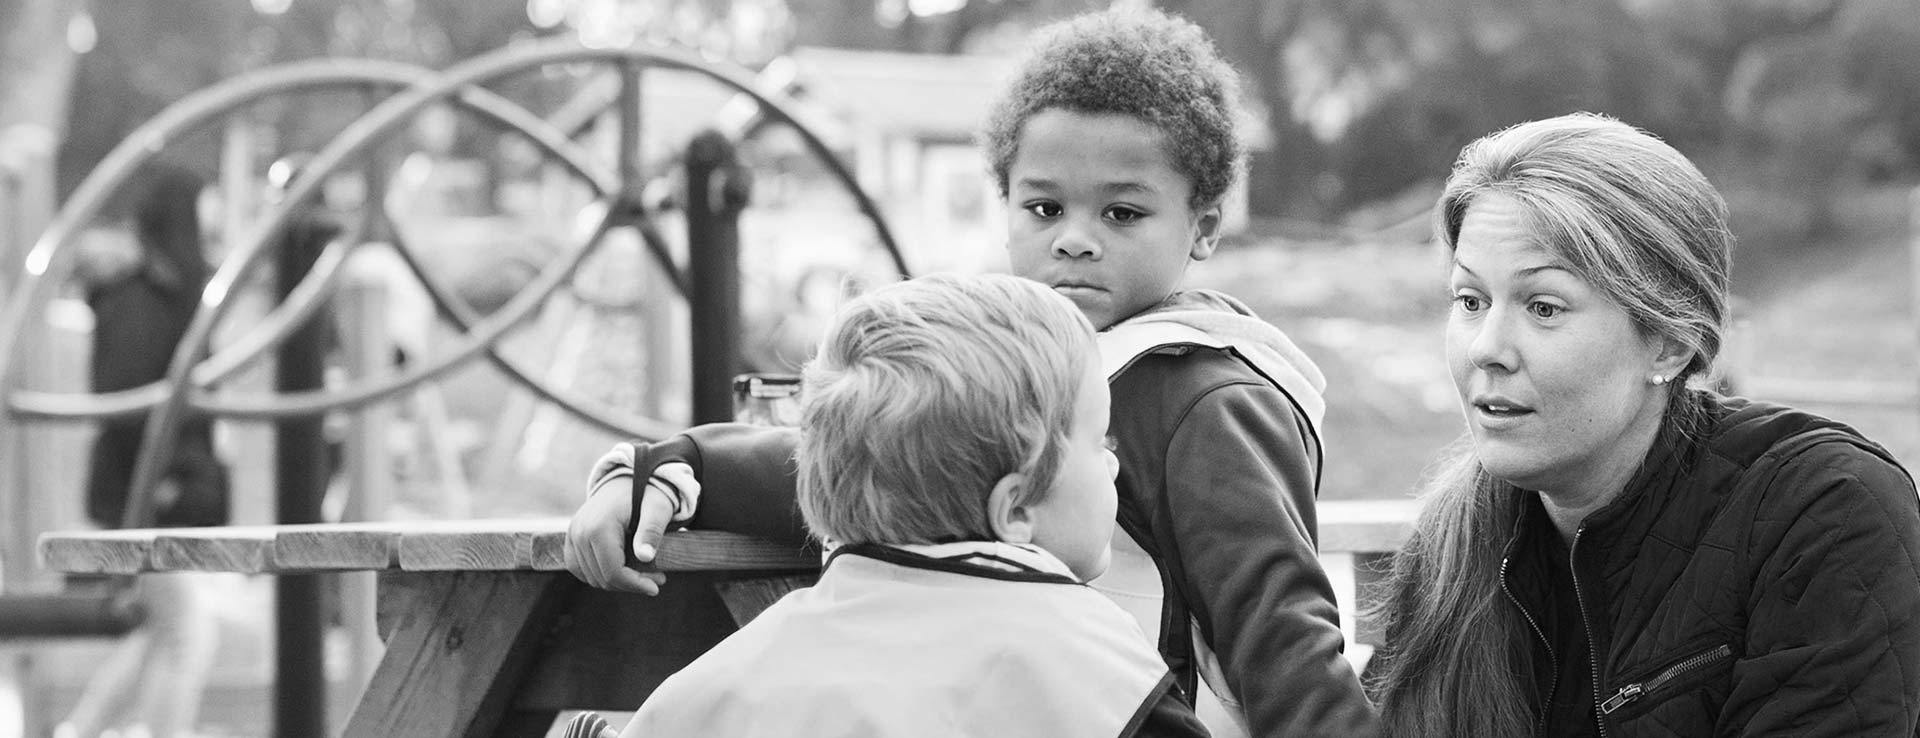 En förskolepedagog pratar med två förskolebarn på en lekplats.